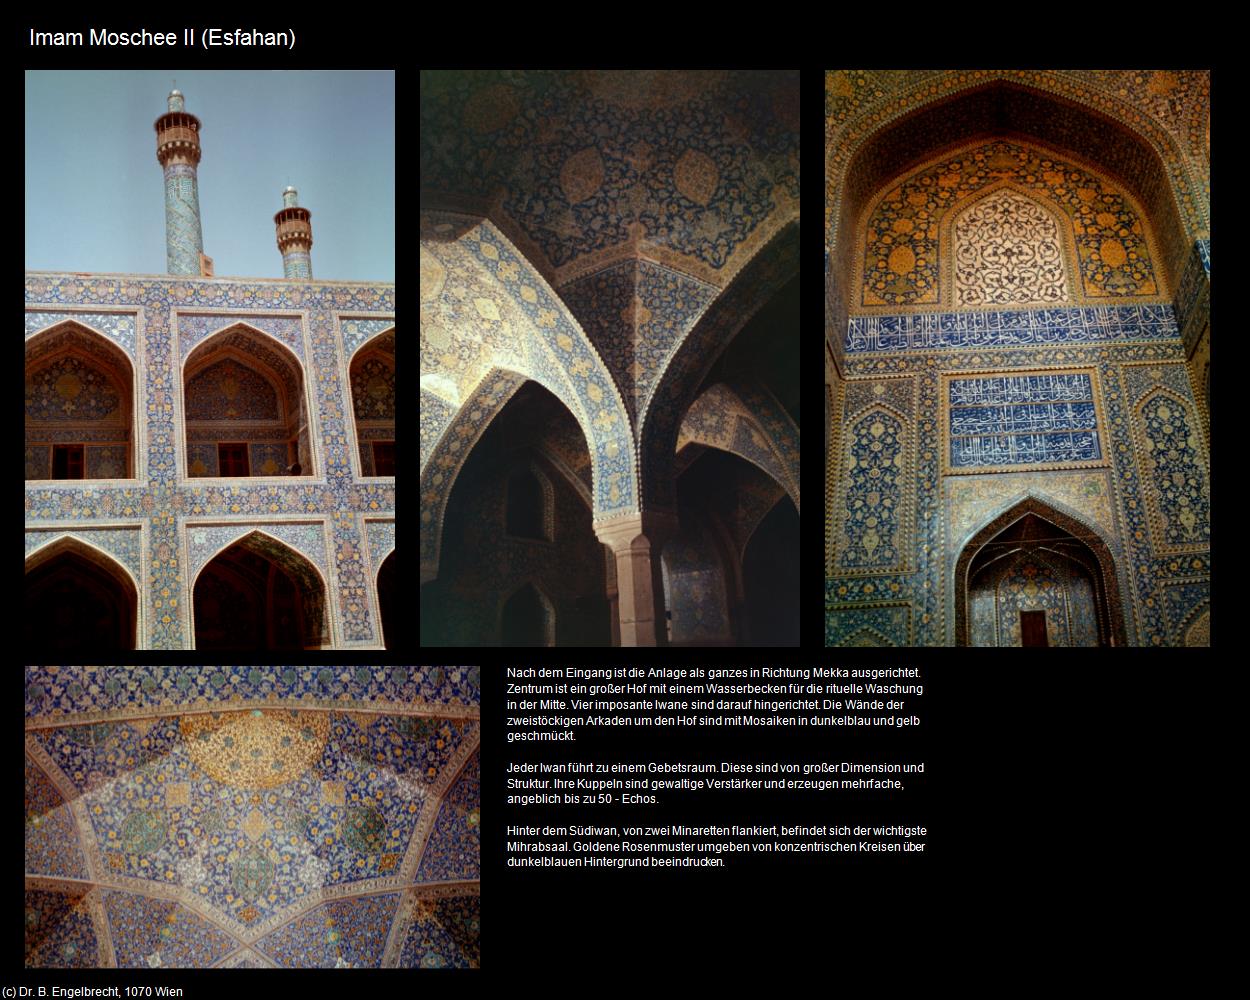 Imam Moschee II (Esfahan) in Iran